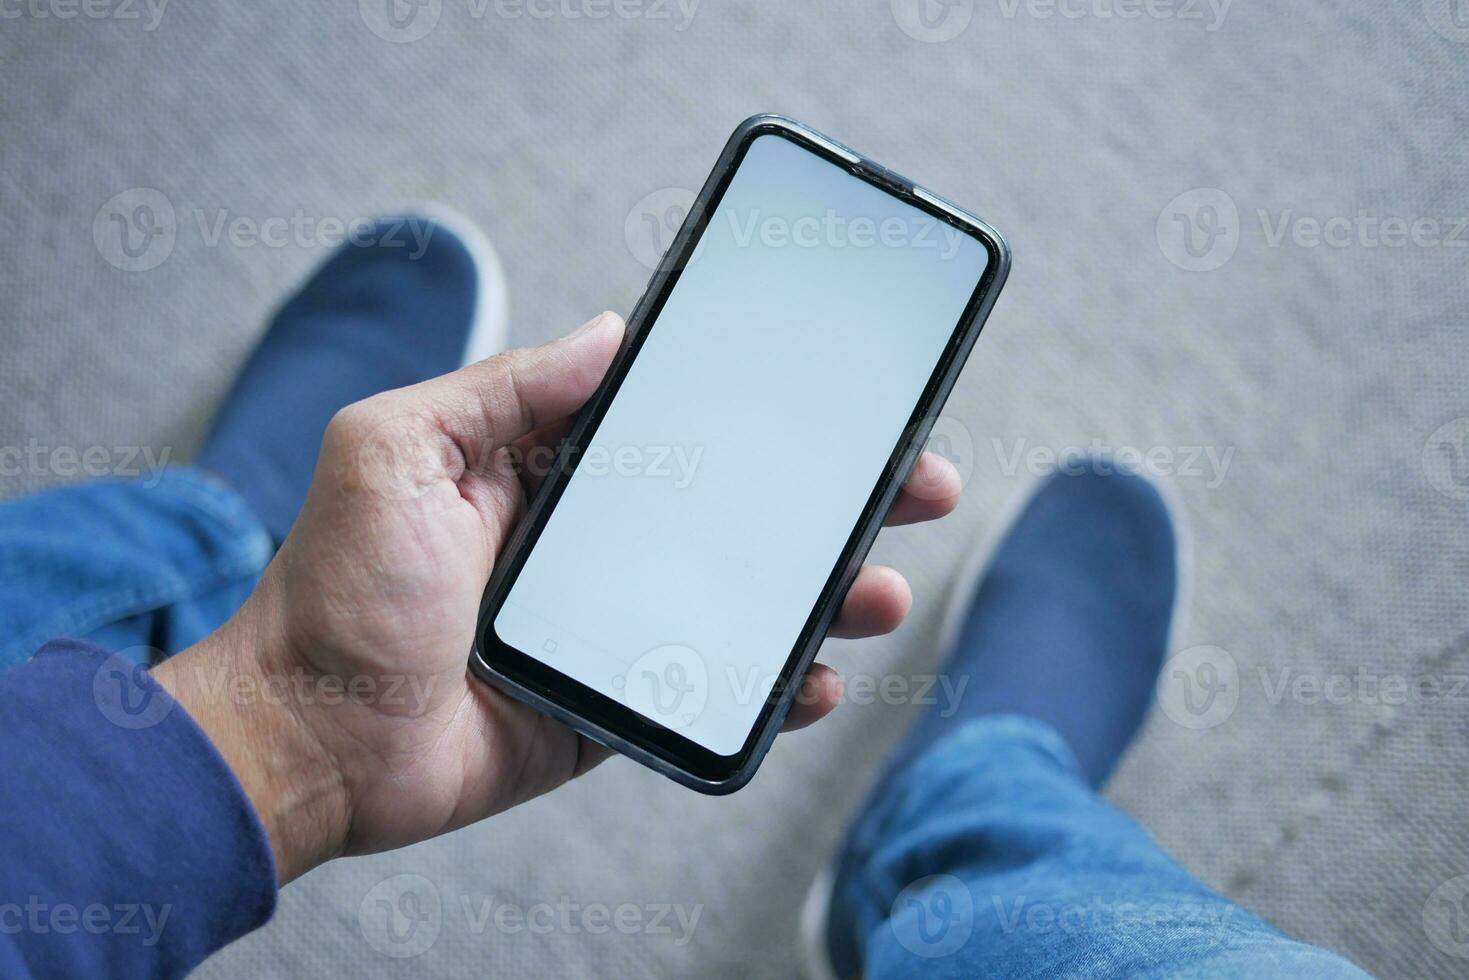 pov coup de Jeune homme main en utilisant intelligent téléphone avec blanc écran tandis que séance photo